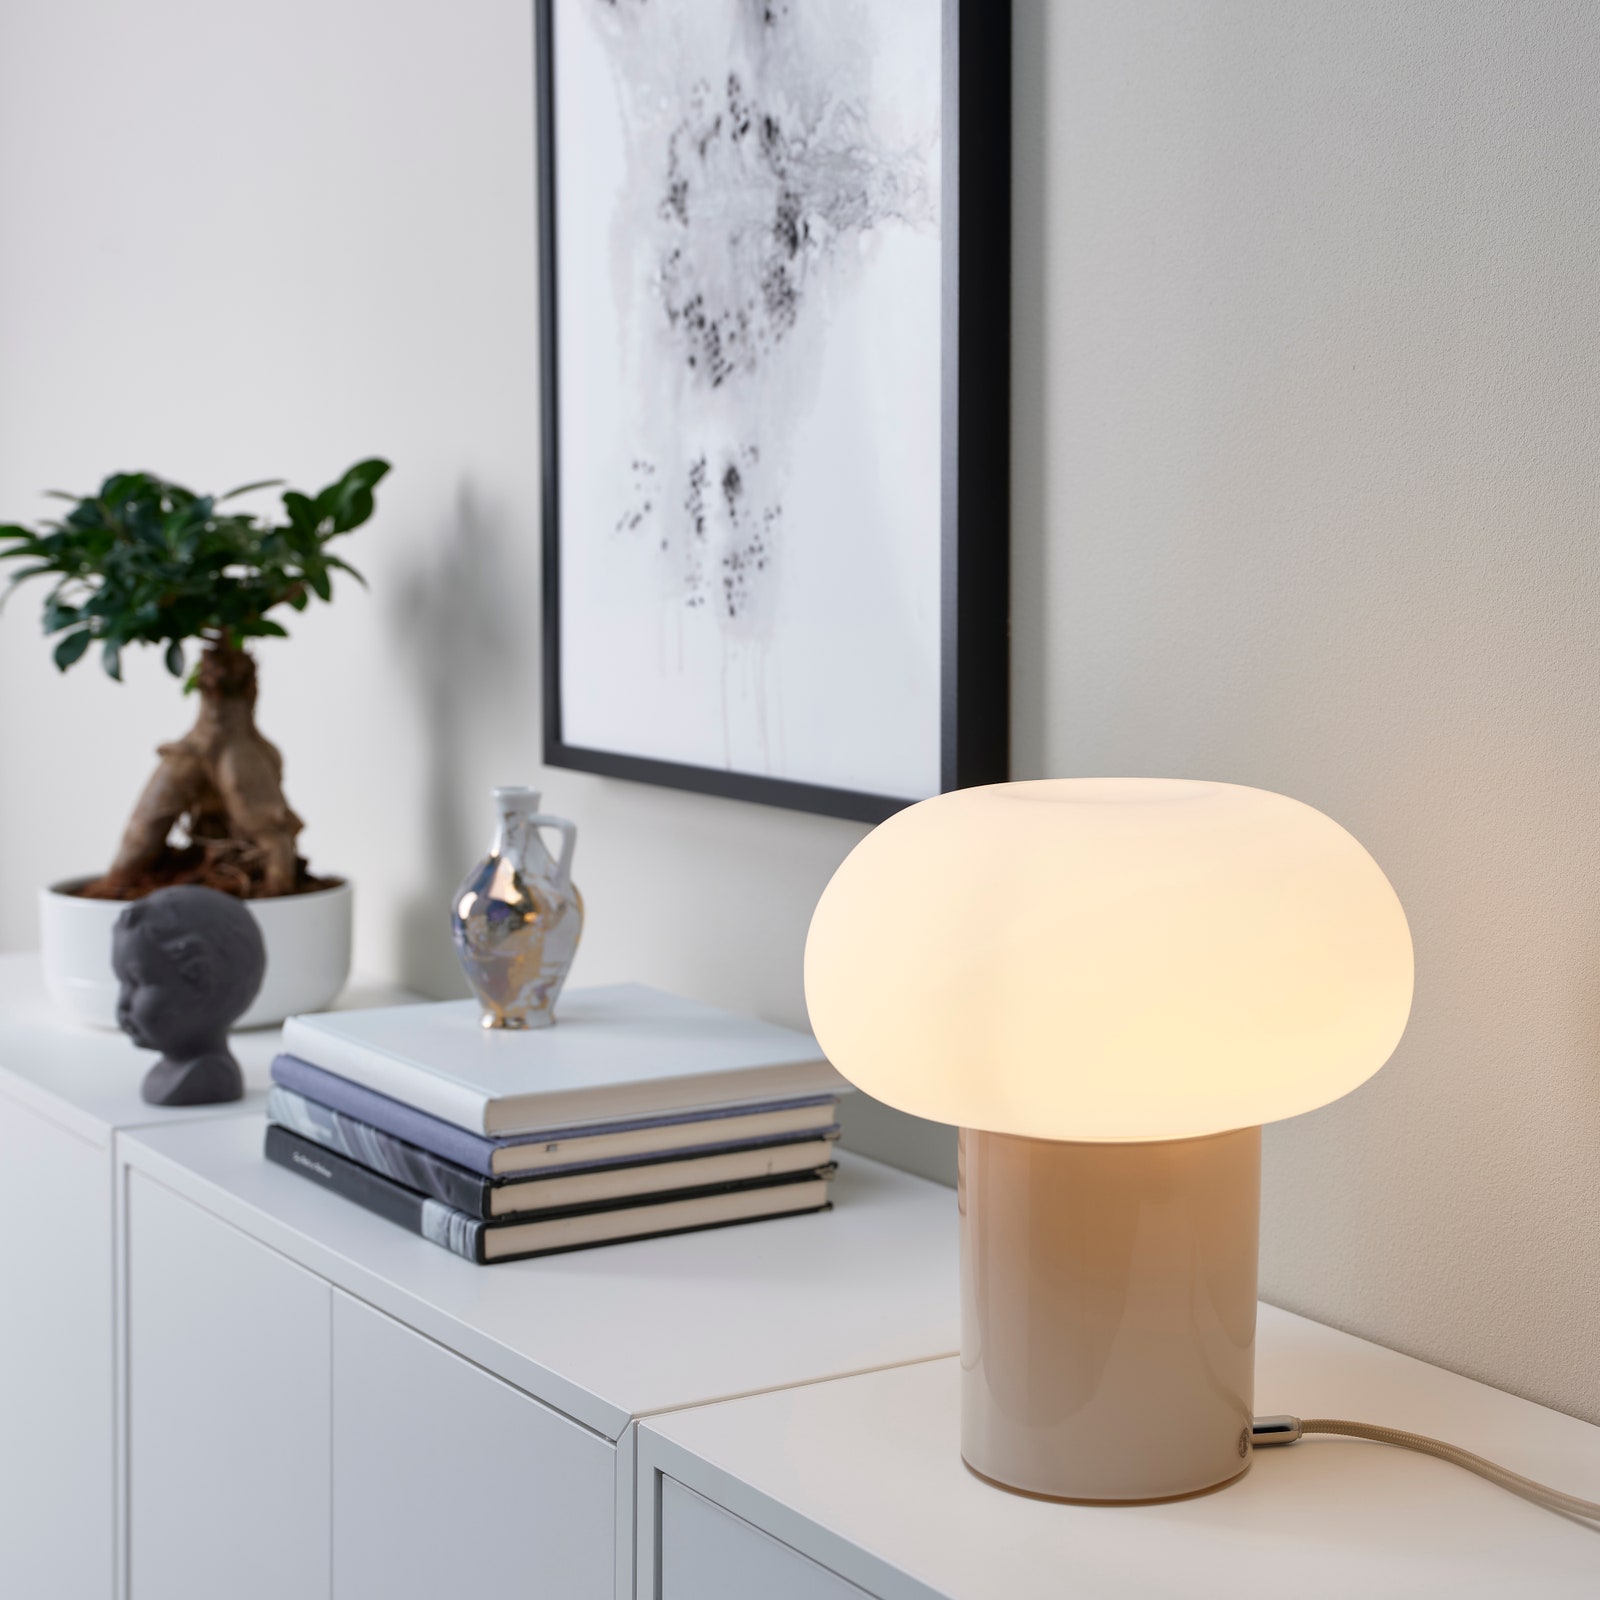 Chiếc đèn Dejsa này là sản phẩm đến từ thương hiệu IKEA với các chi tiết mạ crôm với phần chụp đèn mềm mại có thể thay đổi chuyển đổi giữa ánh sáng vàng ấm và ánh sáng trắng tùy theo tâm trạng hoặc bầu không khí mà chủ nhân mong muốn. 